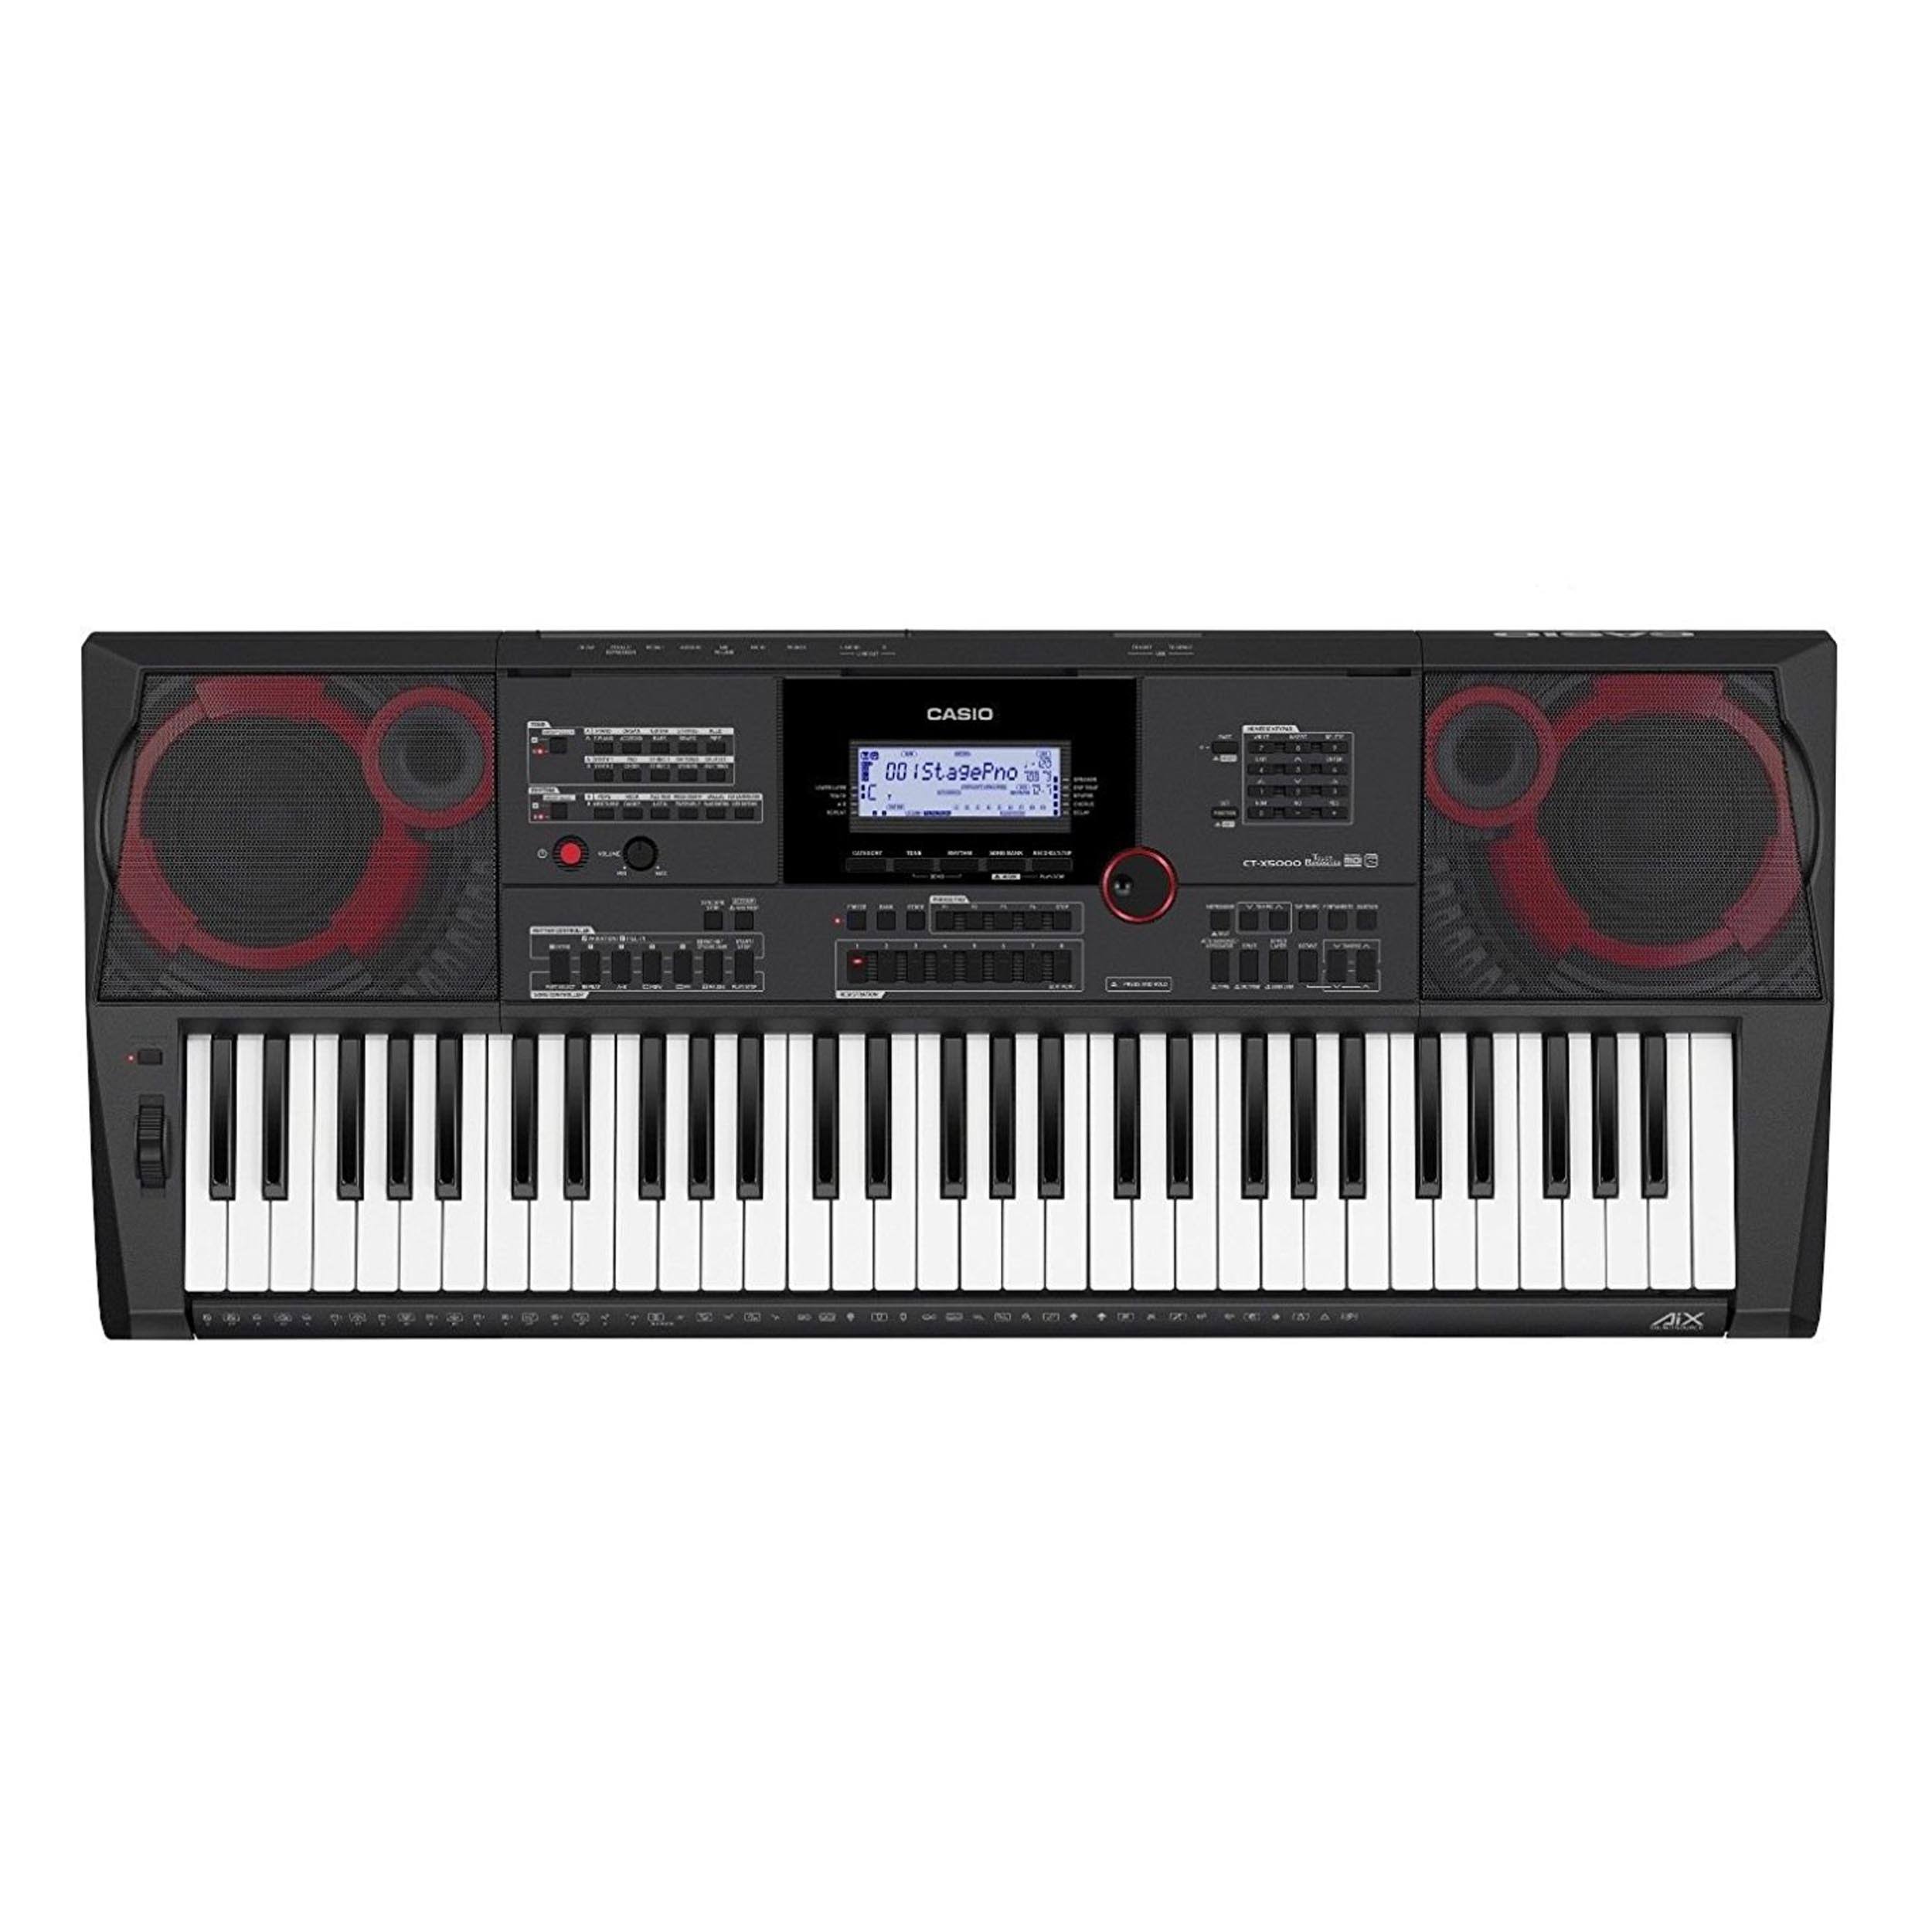 Casio Portable Keyboard - 61 Key